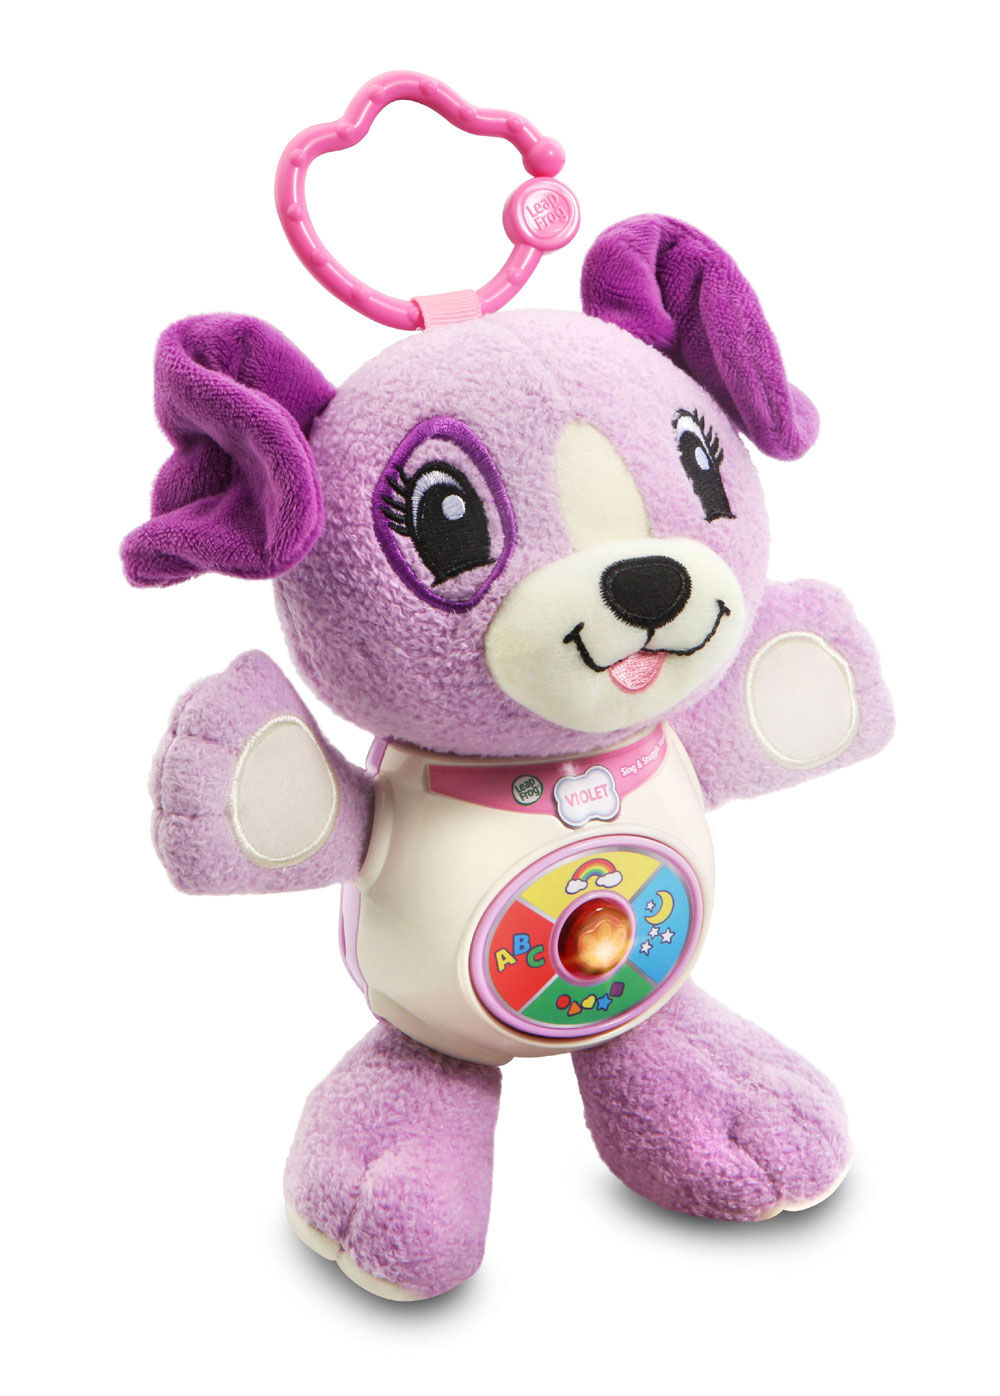 violet stuffed animal